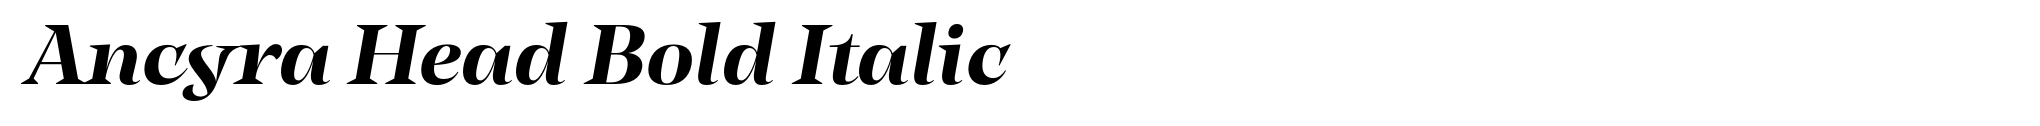 Ancyra Head Bold Italic image